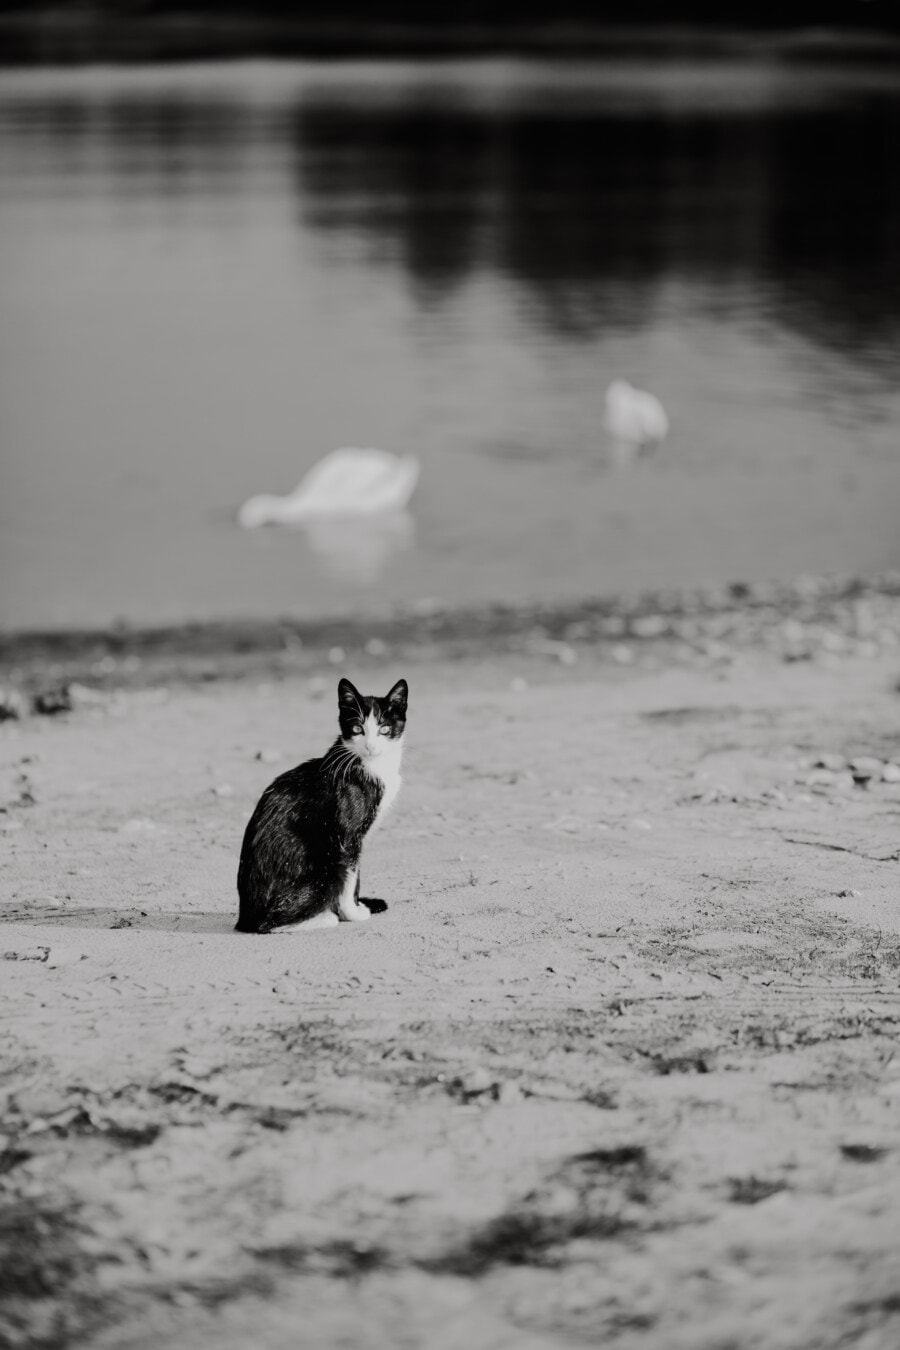 màu đen và trắng, màu xám, đơn sắc, bờ sông, mèo trong nước, Cát, Bãi biển, Bãi biển, nước, động vật